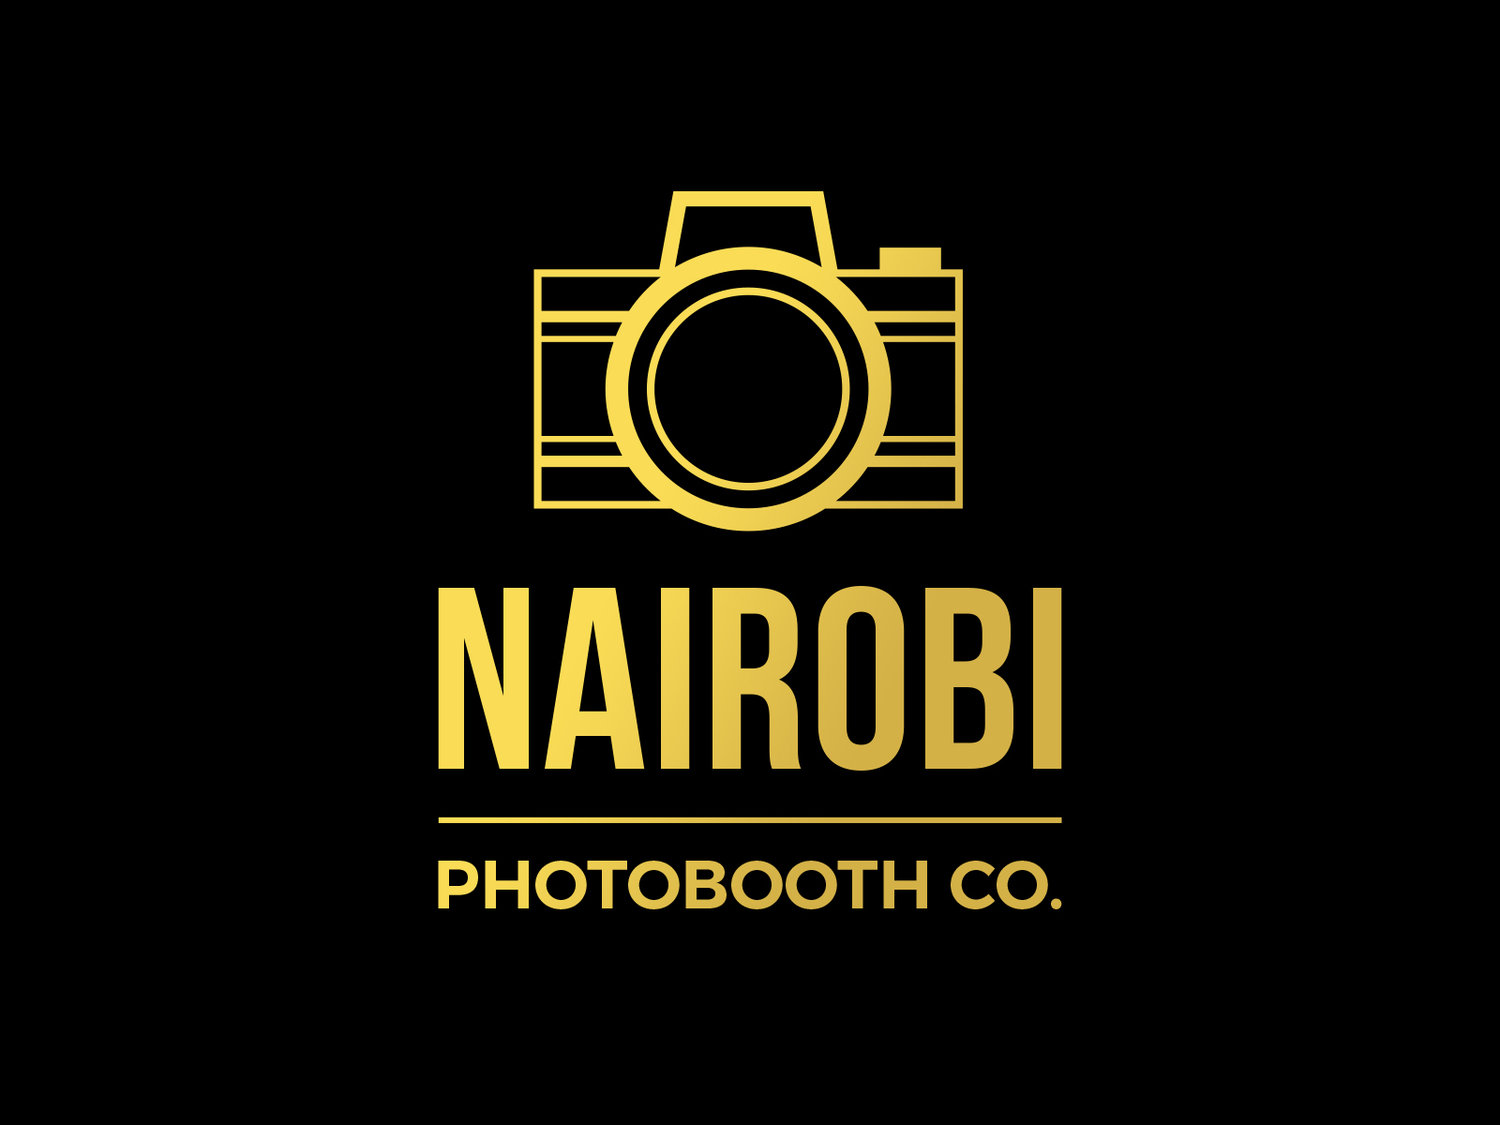 Nairobi Photobooth Company